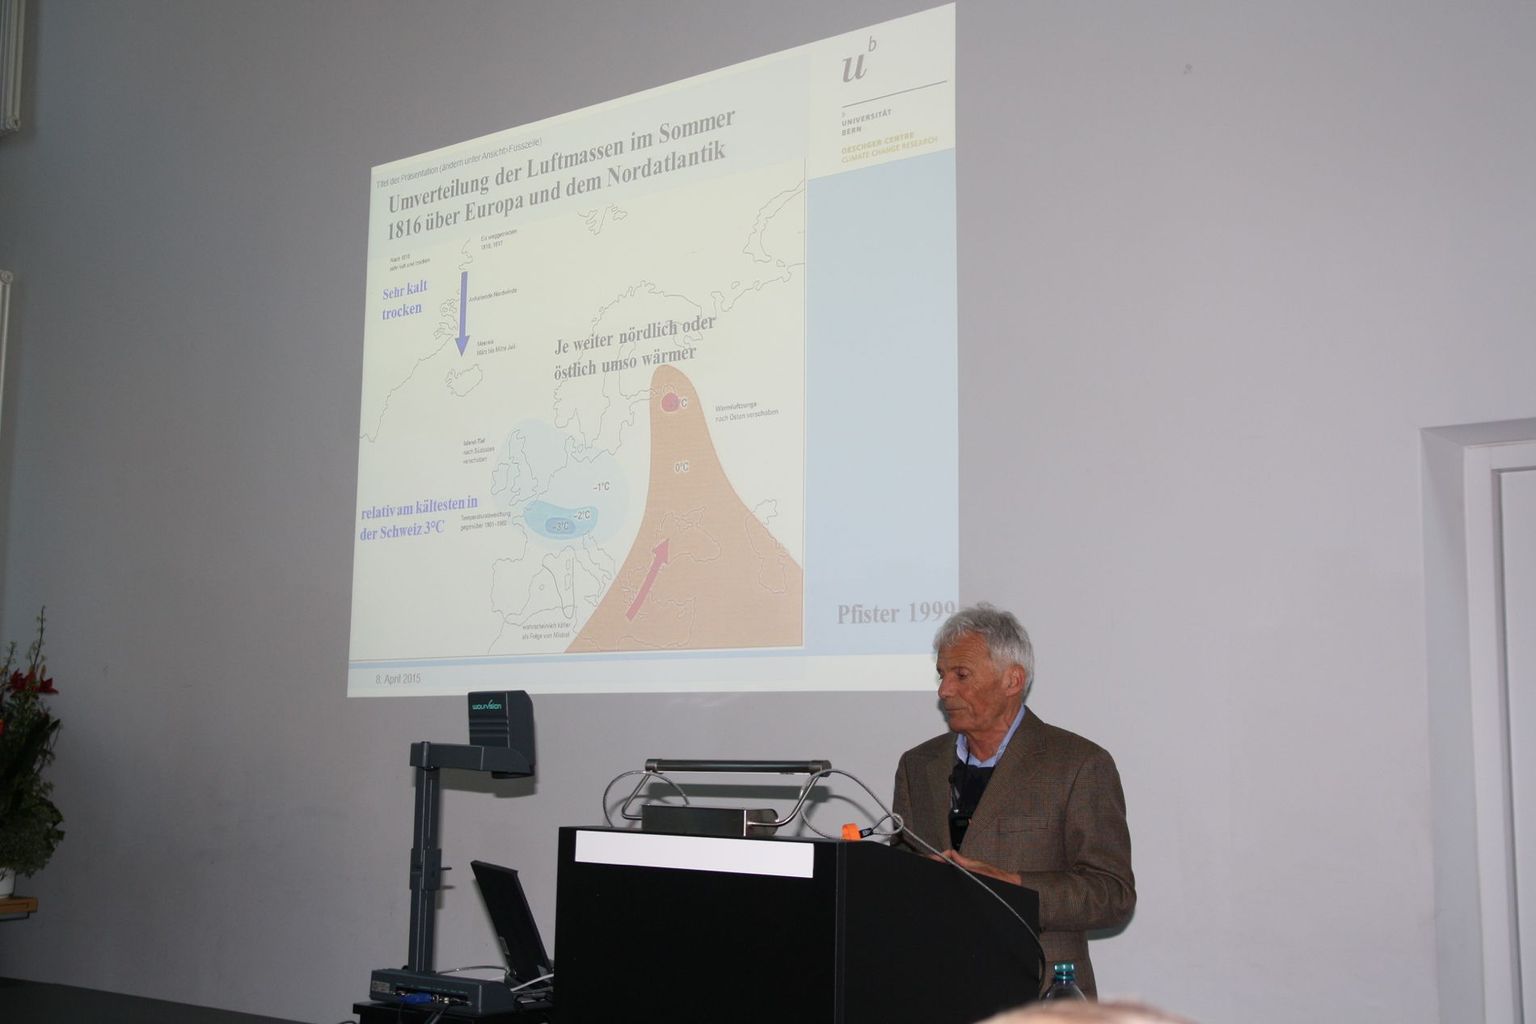 Prof. Chr. Pfister erläutert den Vulkanausbruch und seine Auswirkungen in Europa.